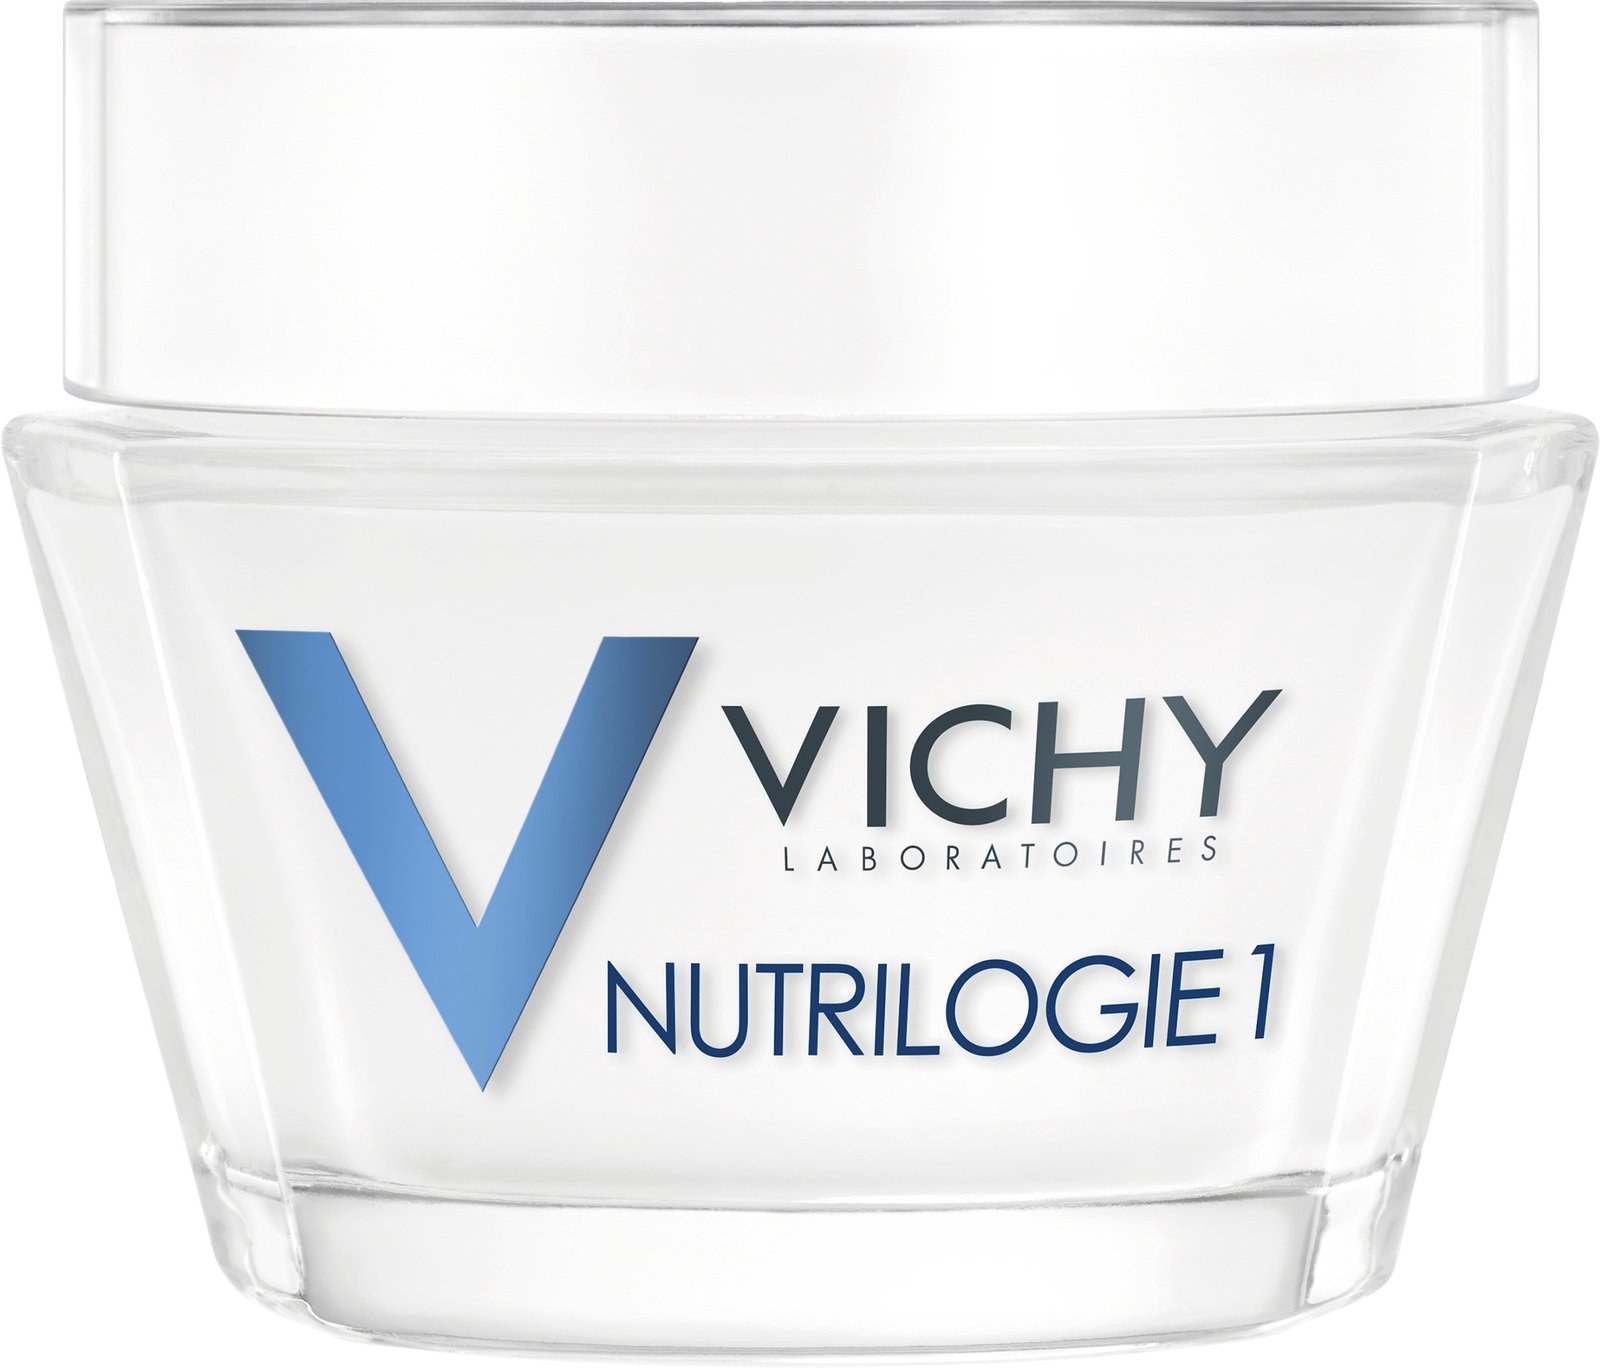 Vichy Nutrilogie 1 Dry Skin 50 ml